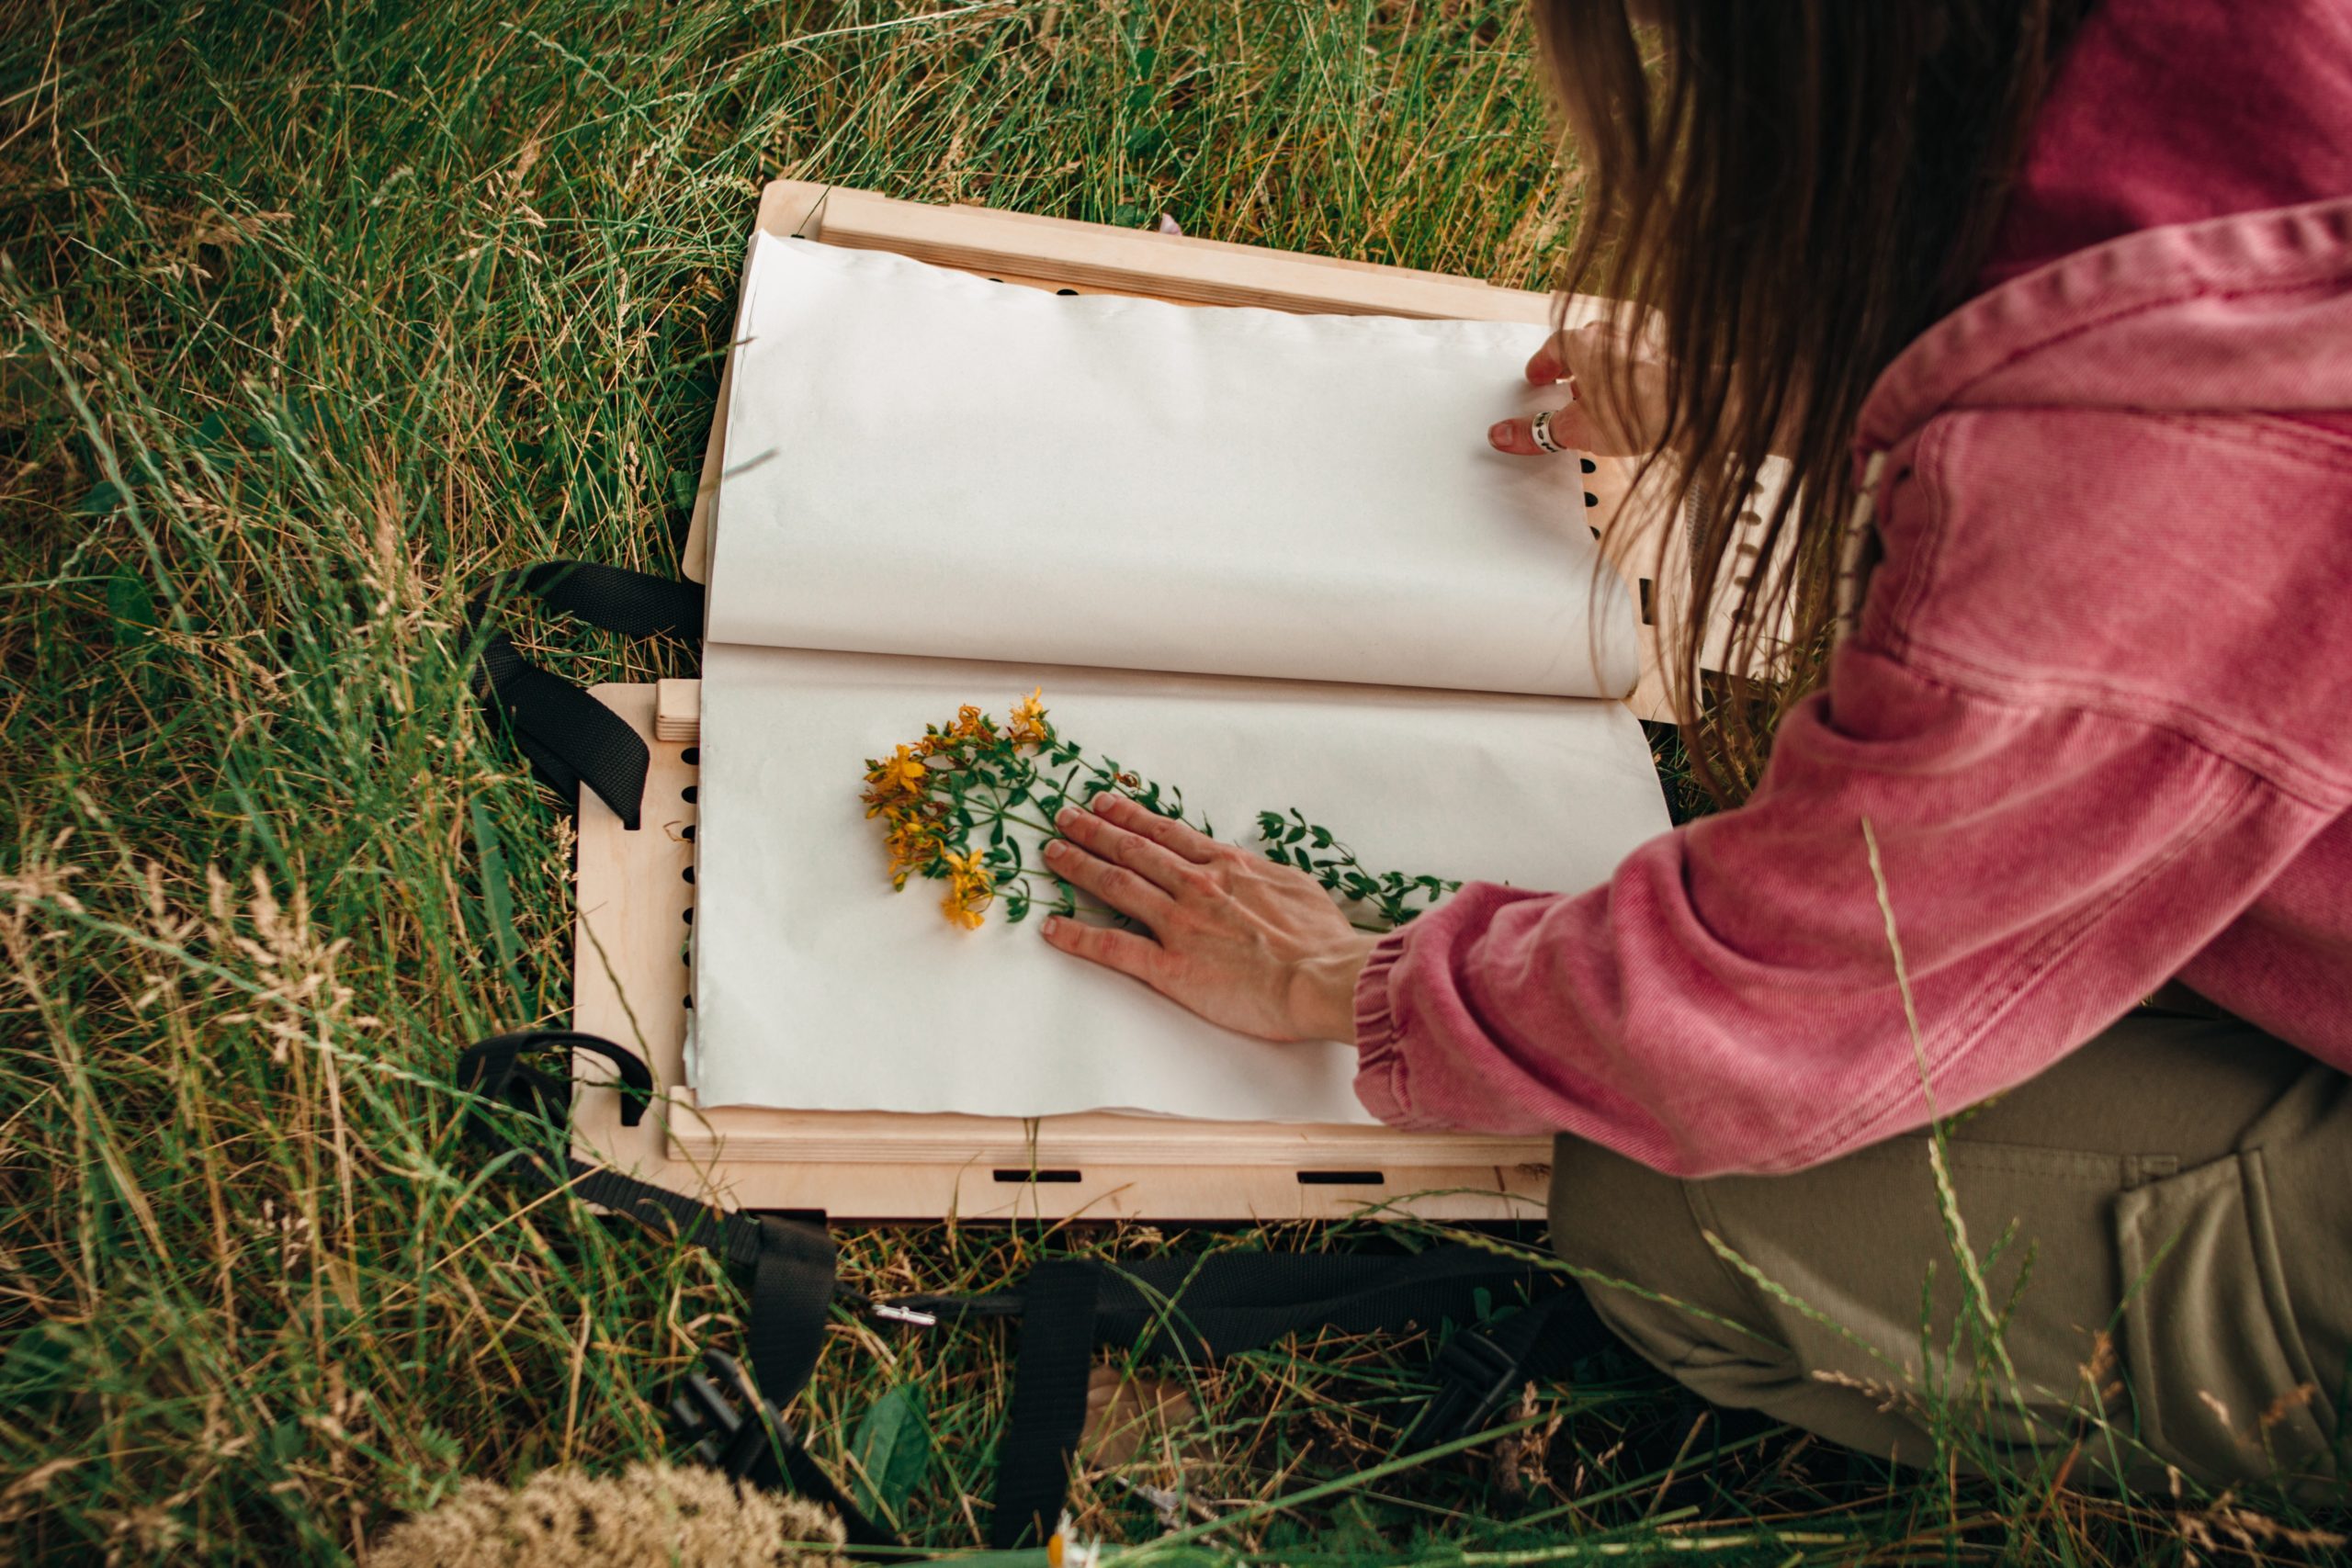 Kobieta układająca roślinę z żółtymi kwiatami na kartce papieru. Kobieta siedzi na trawie.